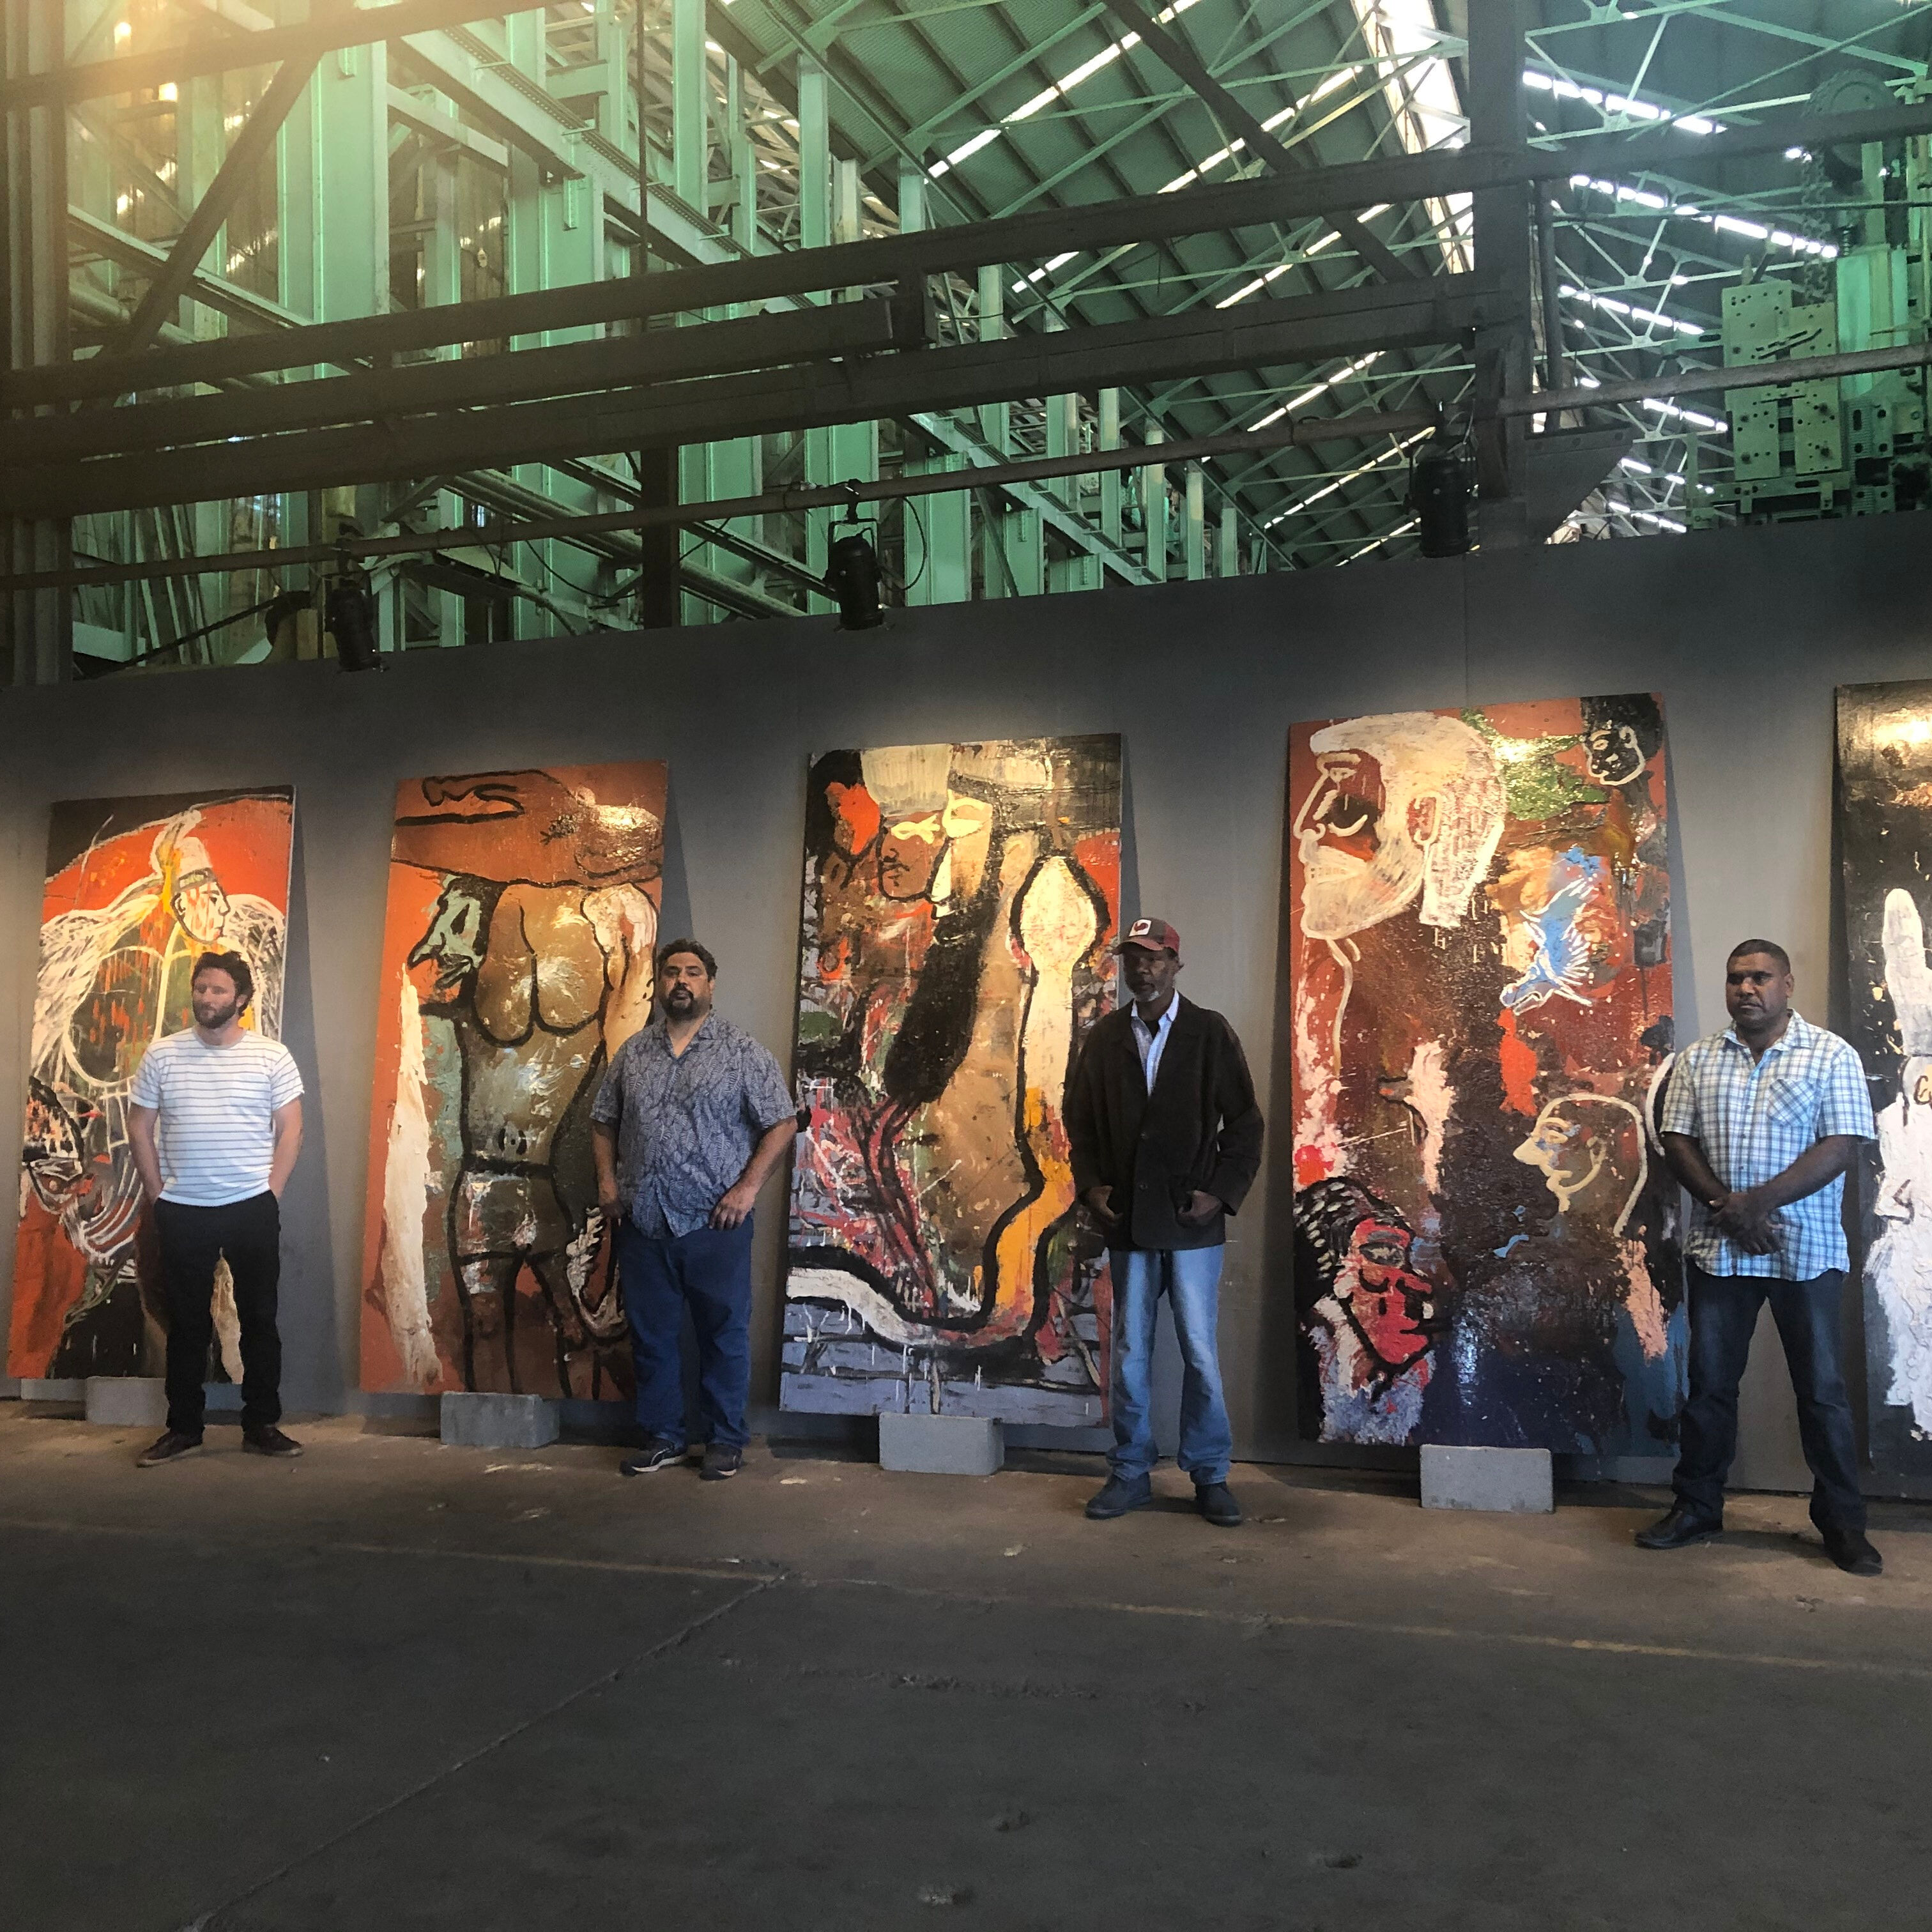 7. Tennant Creek Brio artists RB, JW, FB, JF with Ancestor boards 2020, NIRIN, 22nd Biennale of Sydney